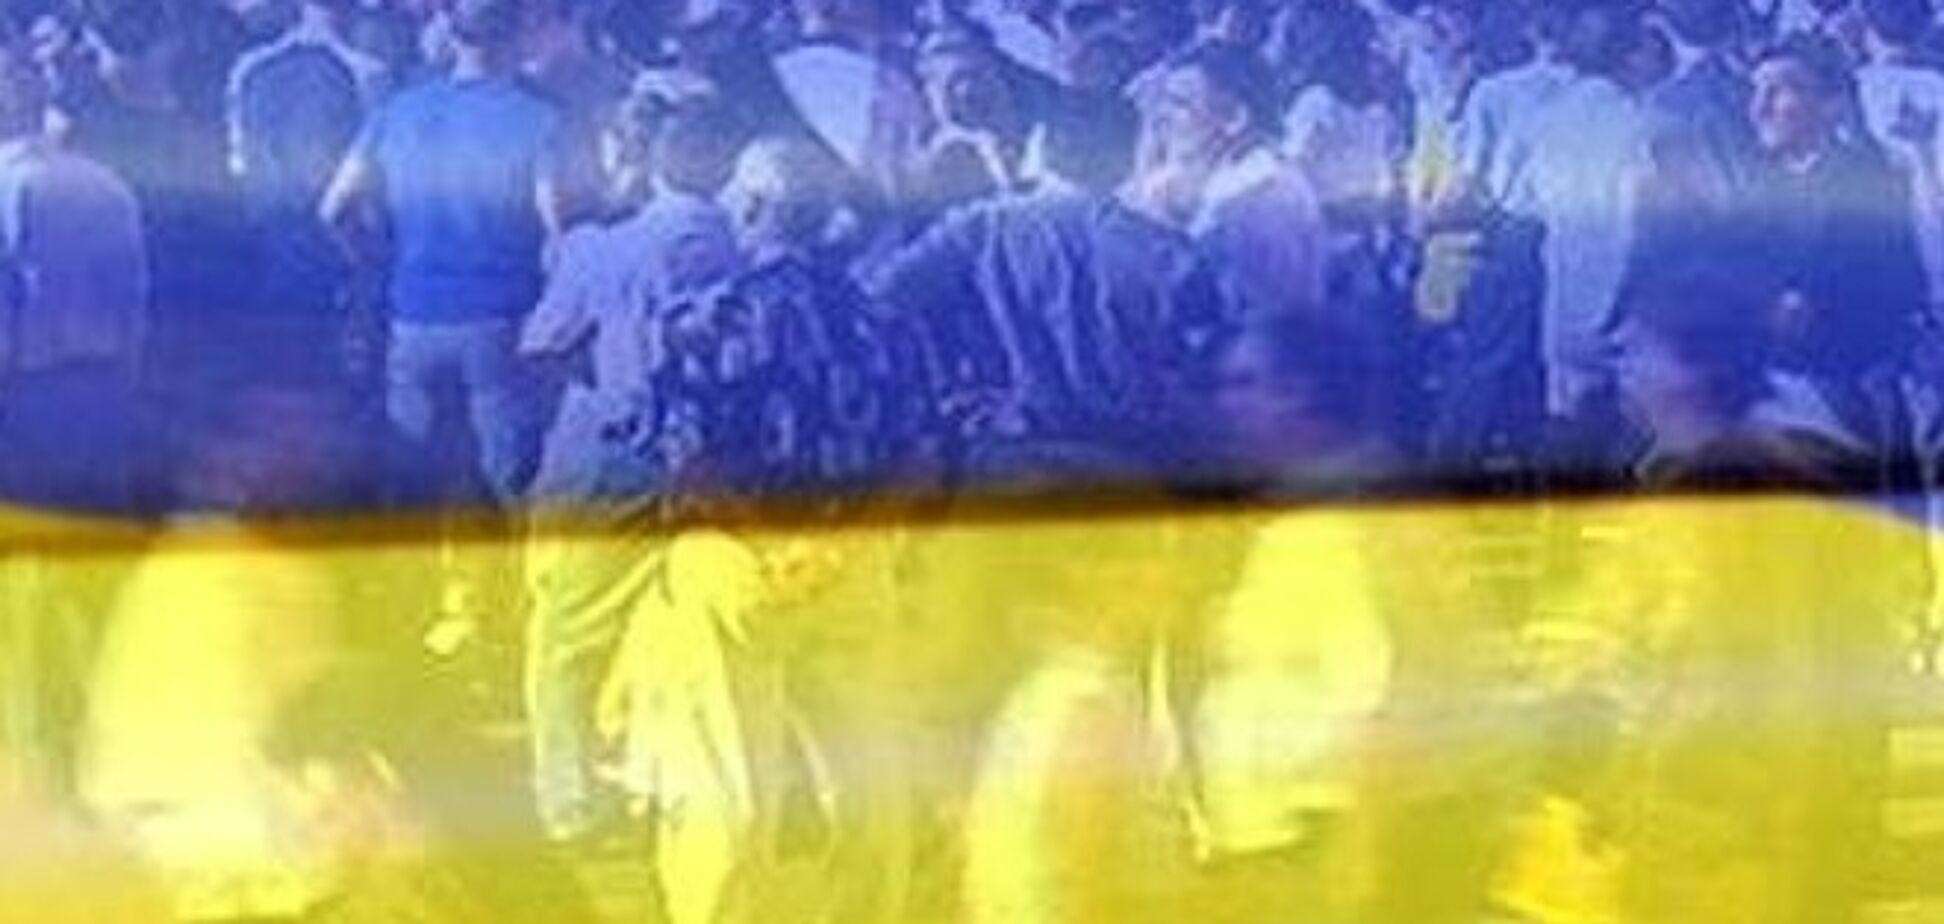 Половина населення України висловилася за вступ до ЄС - опитування